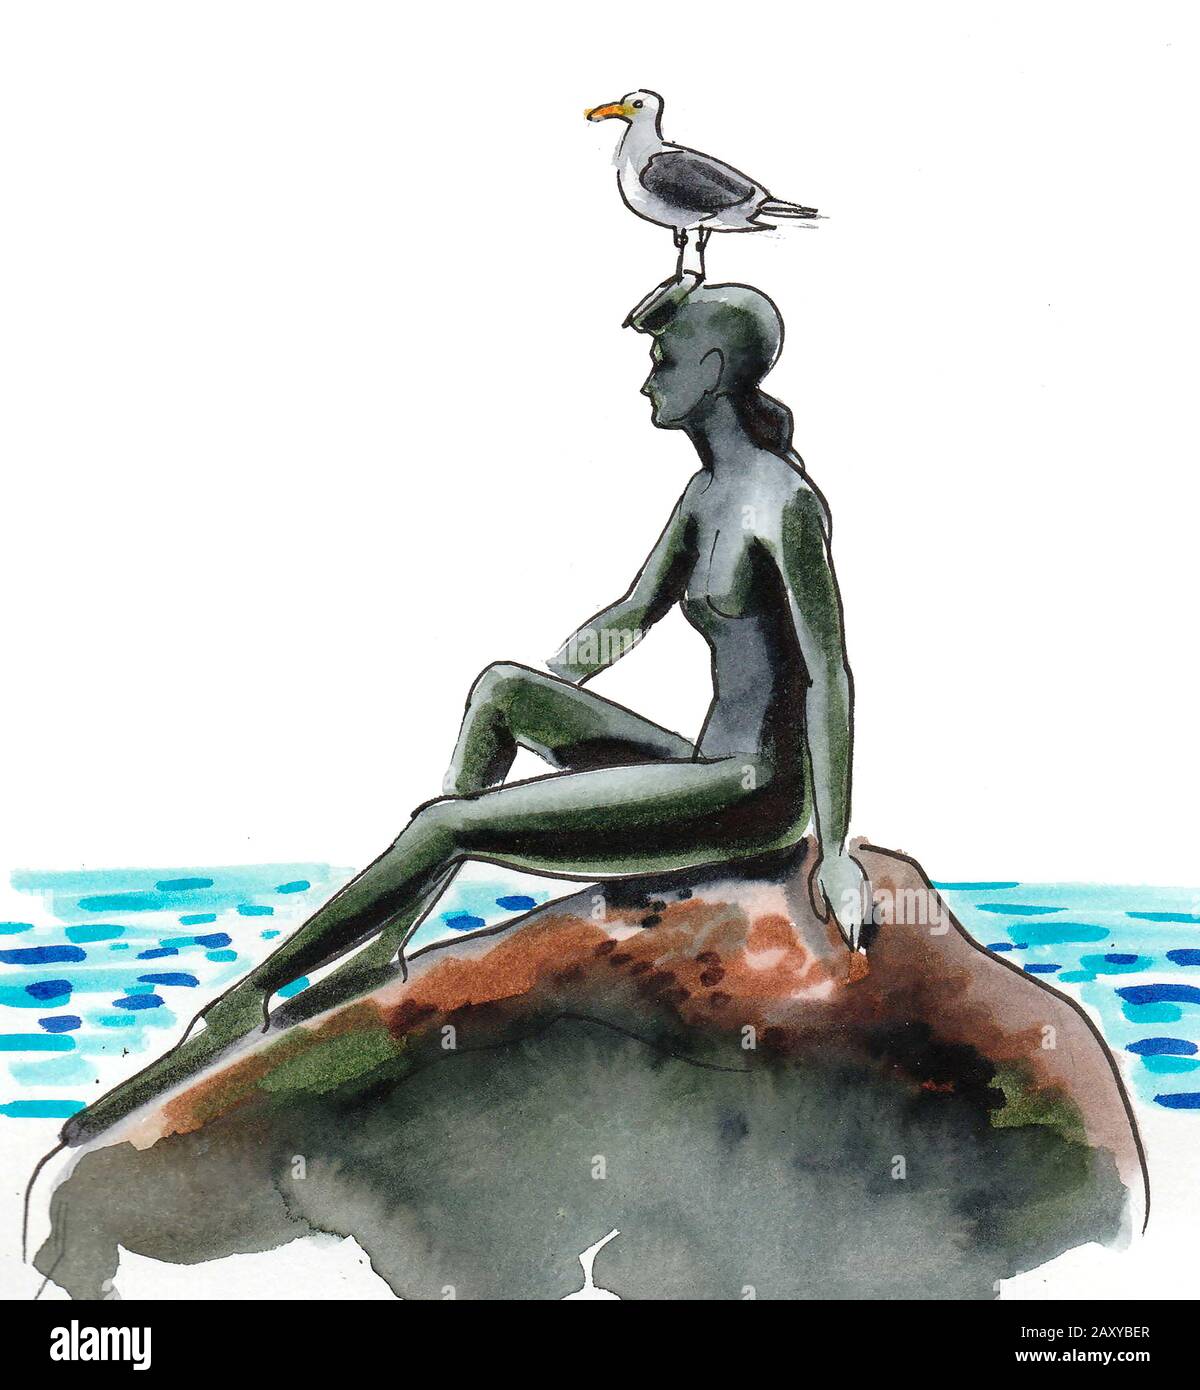 Statue de la fille avec un mouette assis sur la tête. Monument Au Parc Stanley À Vancouver, Colombie-Britannique, Canada. Esquisse en aquarelle Banque D'Images